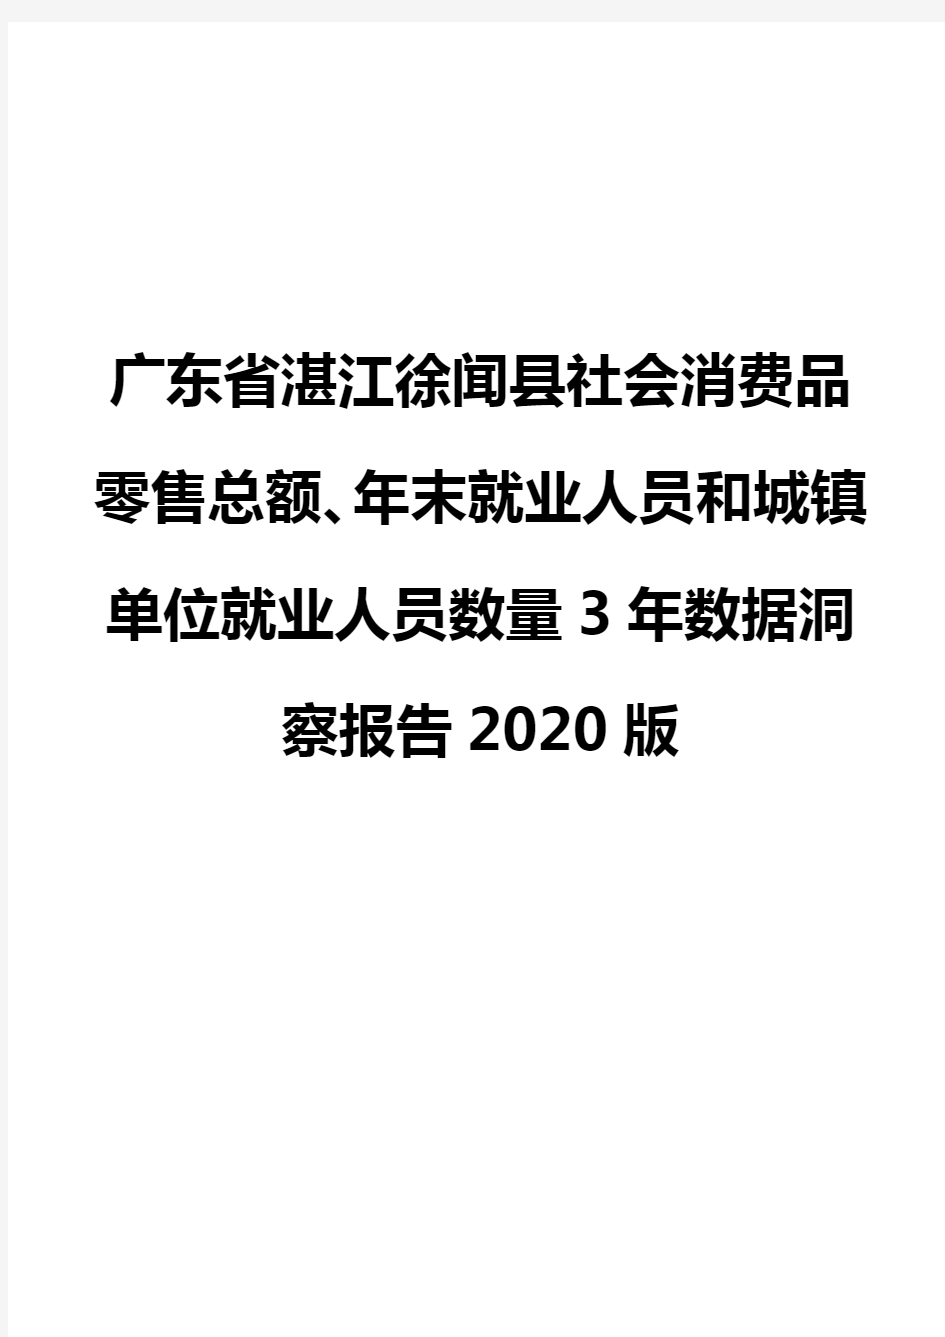 广东省湛江徐闻县社会消费品零售总额、年末就业人员和城镇单位就业人员数量3年数据洞察报告2020版